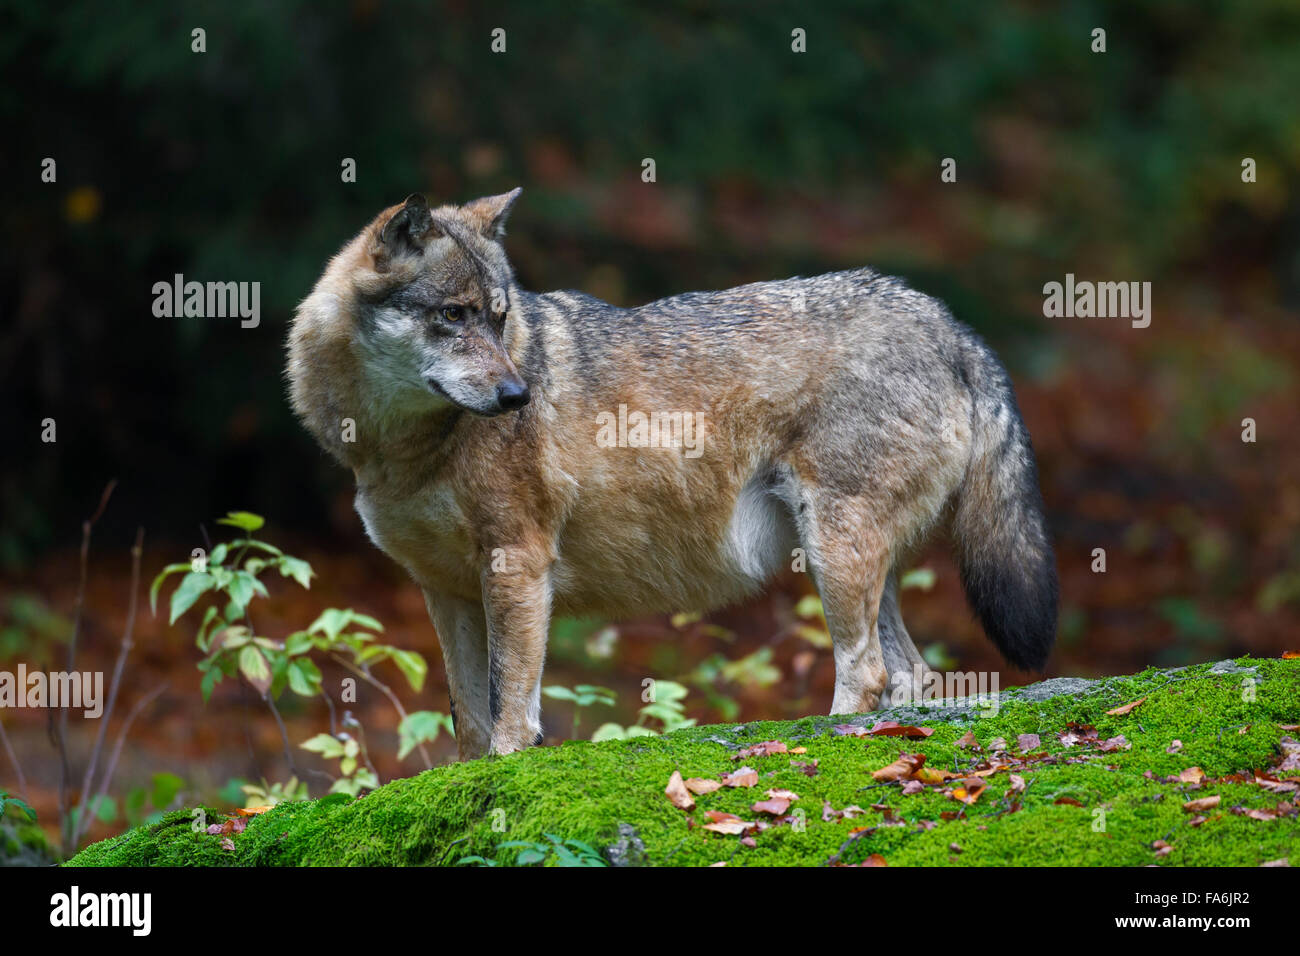 Ben nutrito Unione lupo (Canis lupus) con grasso ventre nella foresta di autunno Foto Stock